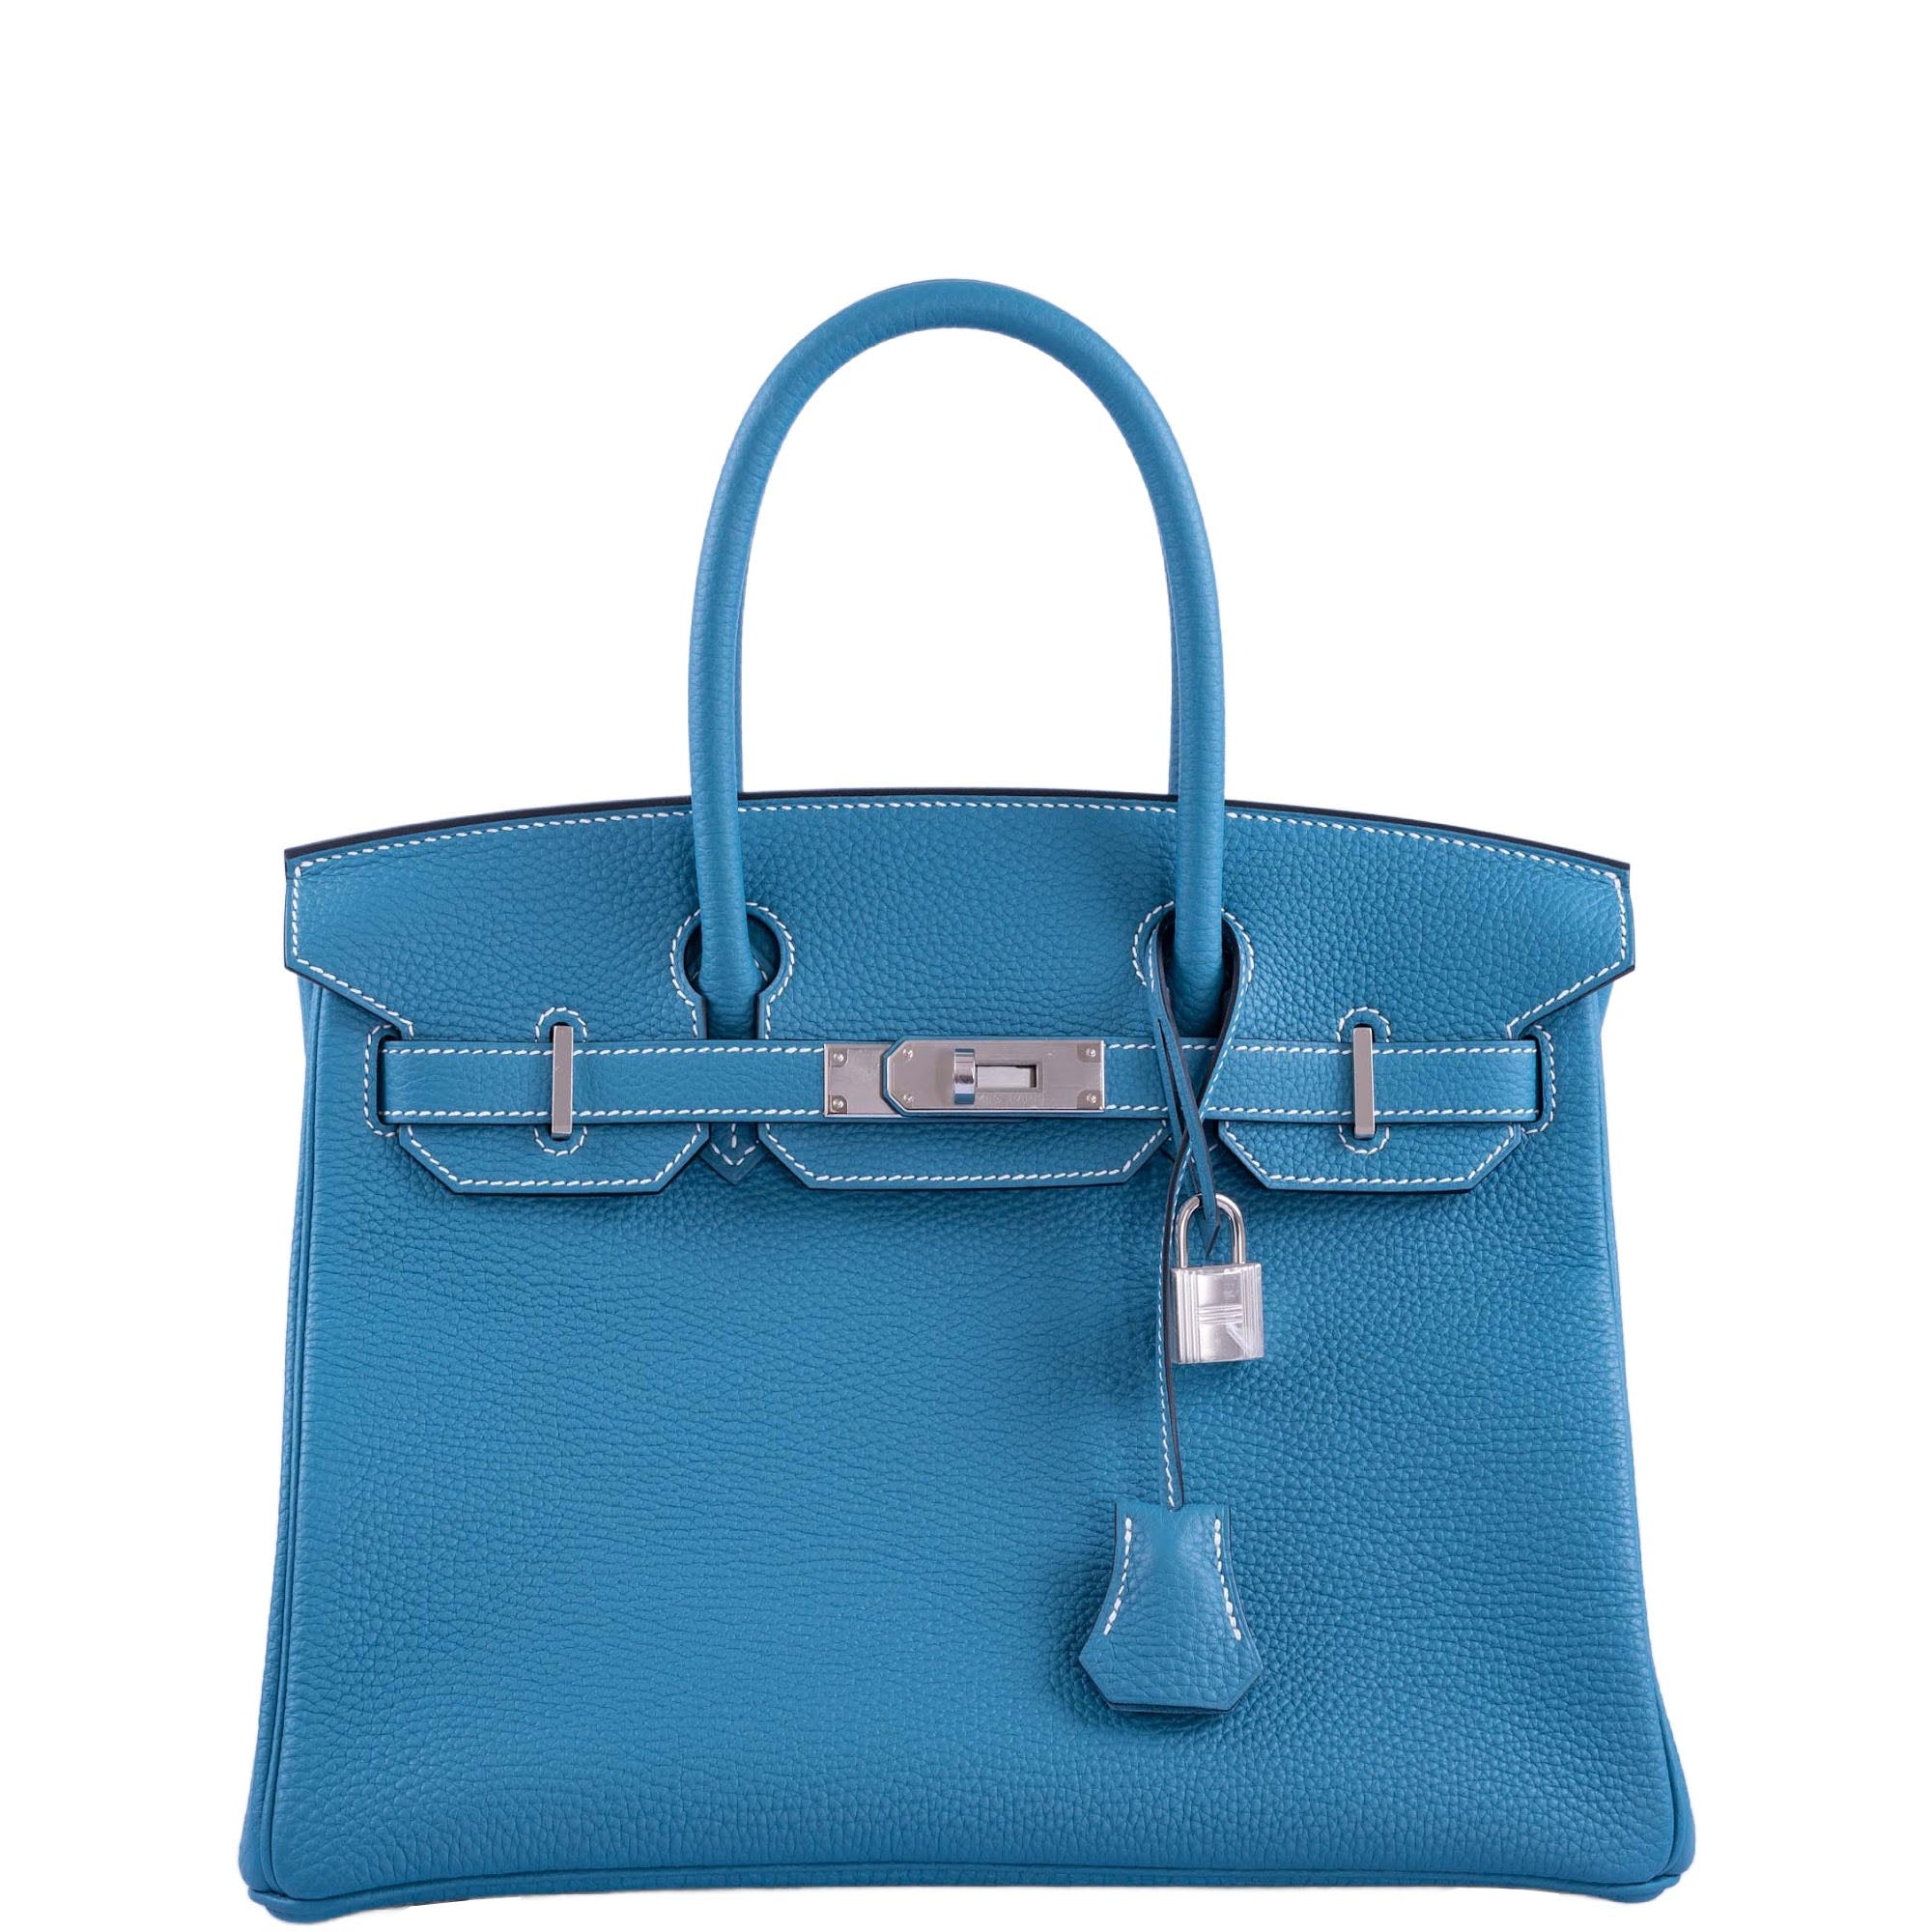 Hermès Birkin 30 Blue Jean Togo Palladium Hardware